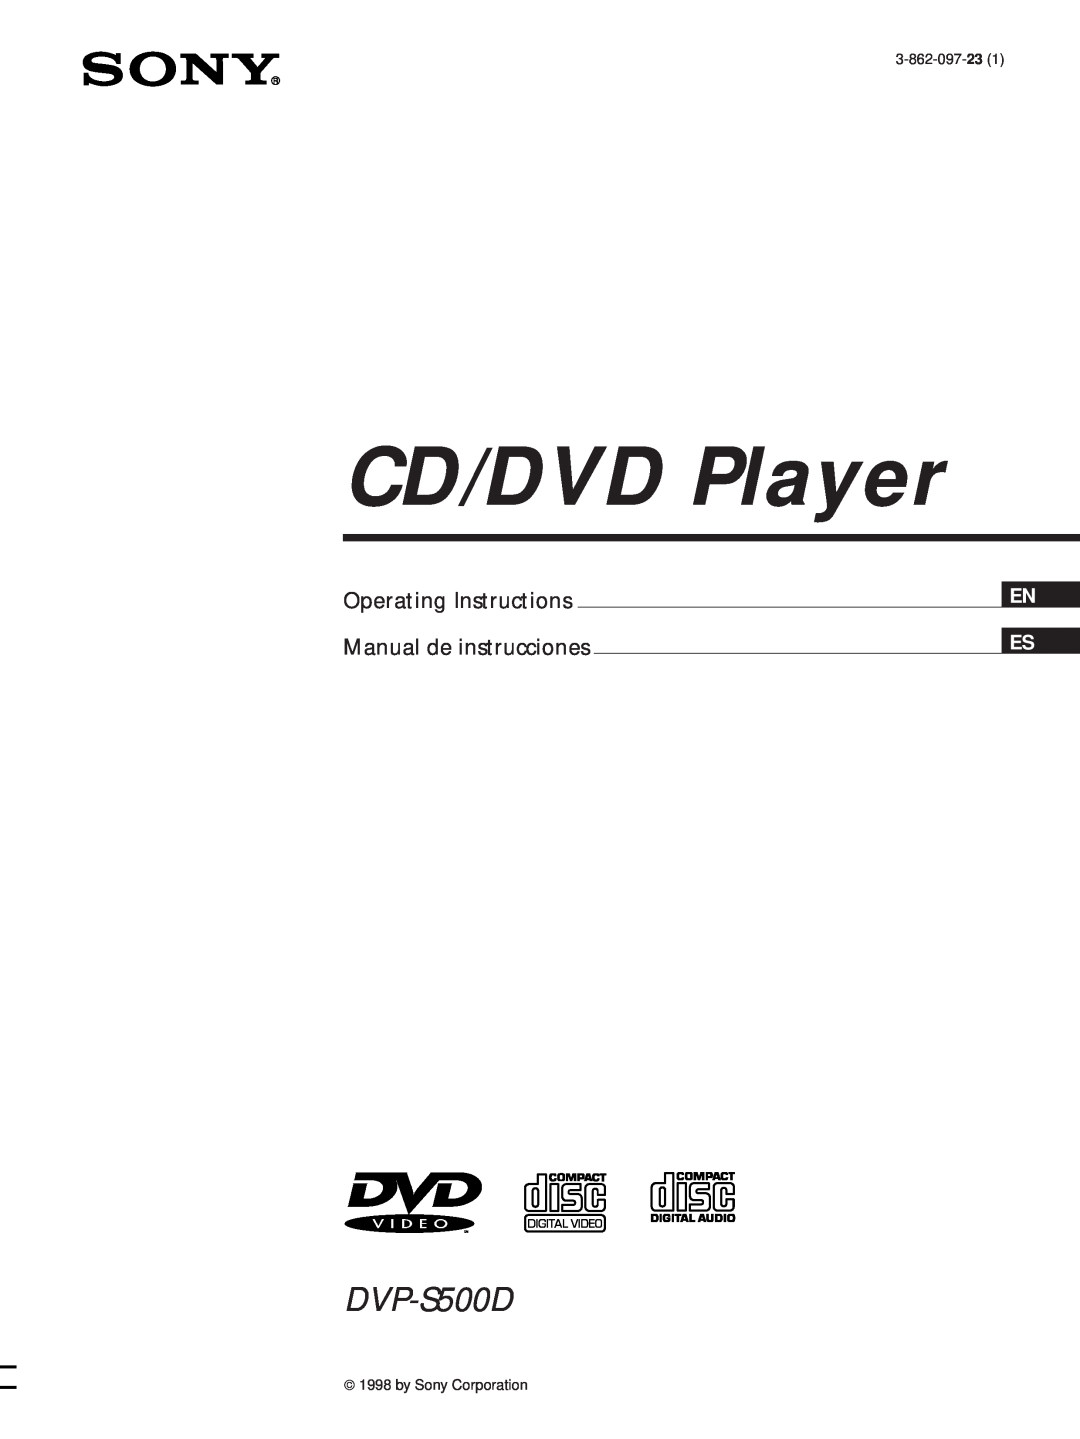 Sony DVP-S500D manual En Es, CD/DVD Player, Operating Instructions Manual de instrucciones 